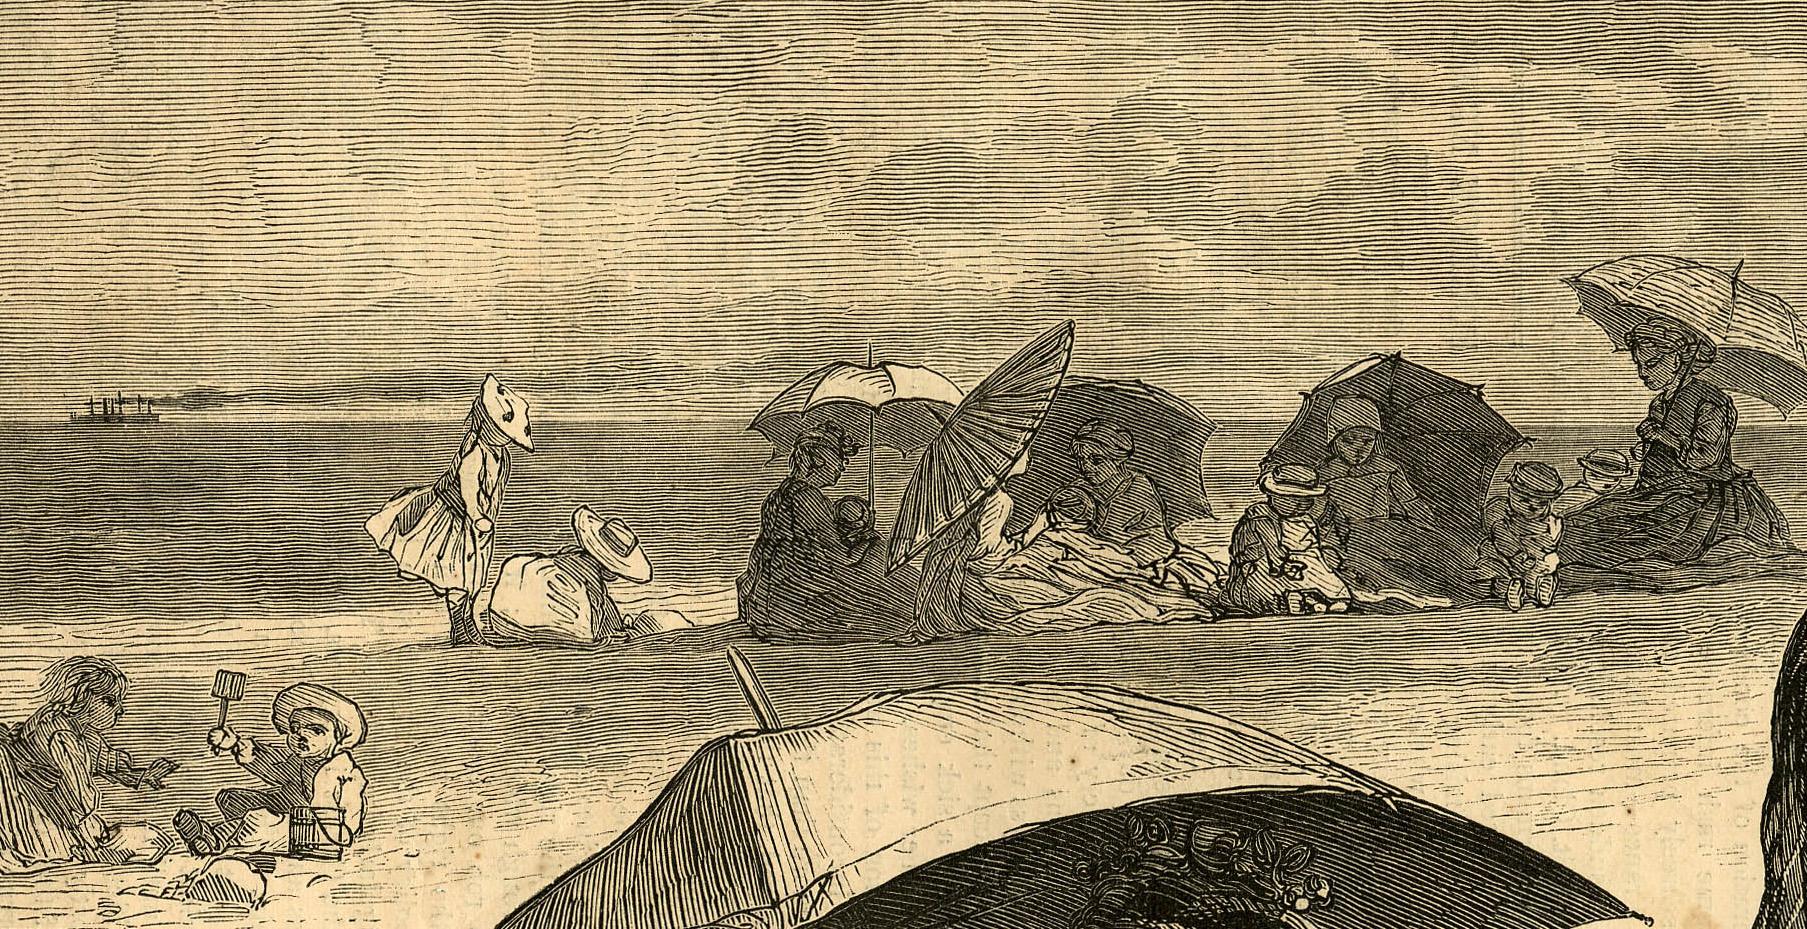 Sur la plage de Long Branch - L'heure des enfants
Gravure sur bois, 1874
Publié dans 